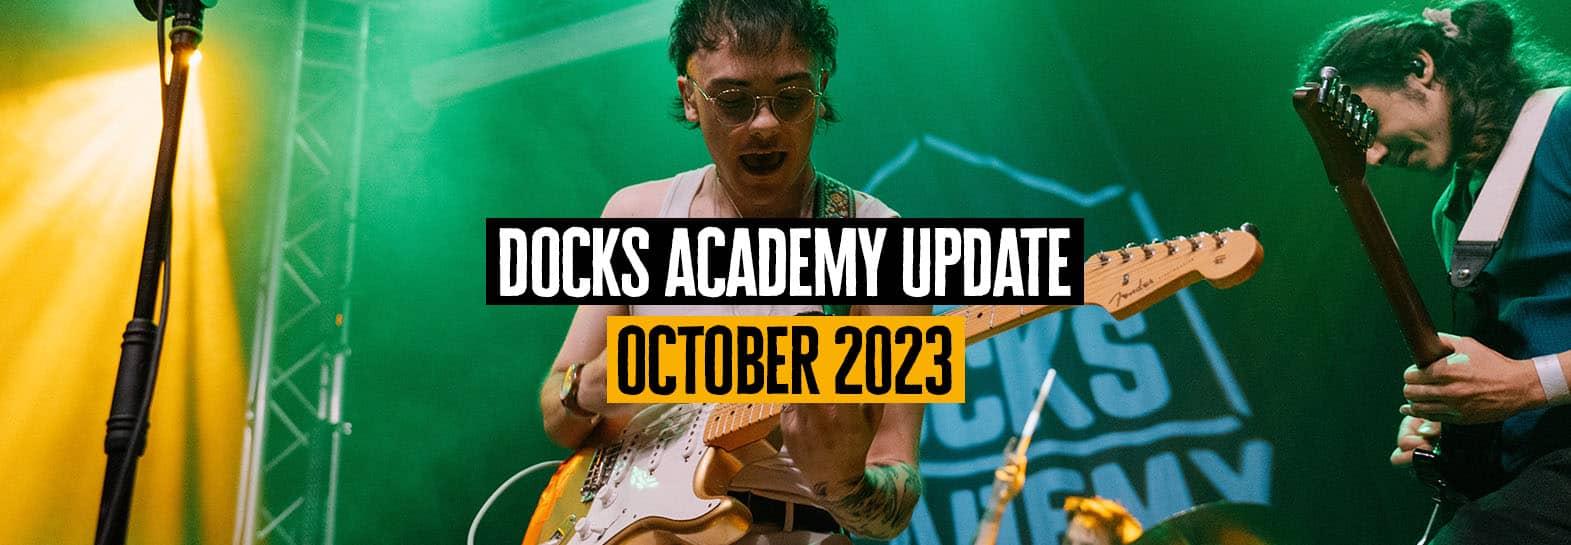 Docks Academy Update Header October 2023